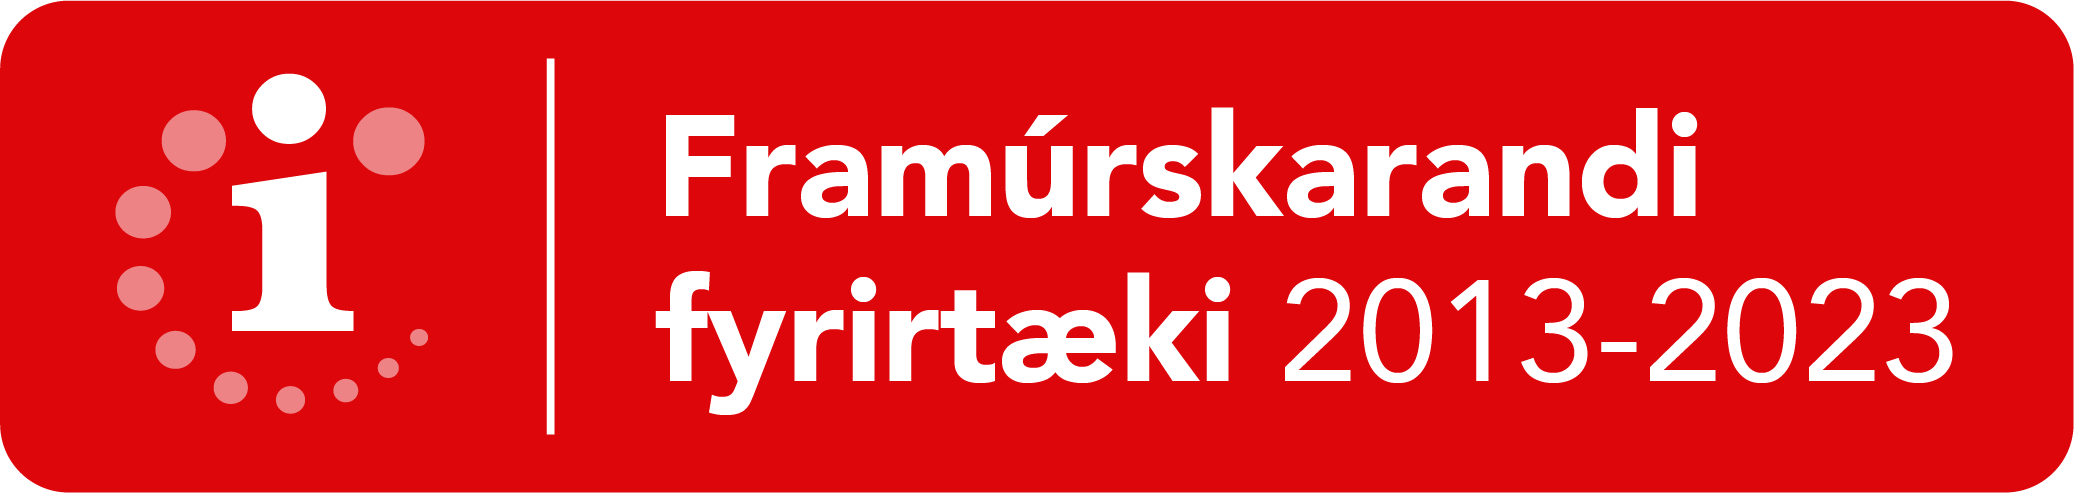 Framúrskarandi fyrirtæki 2013-2023